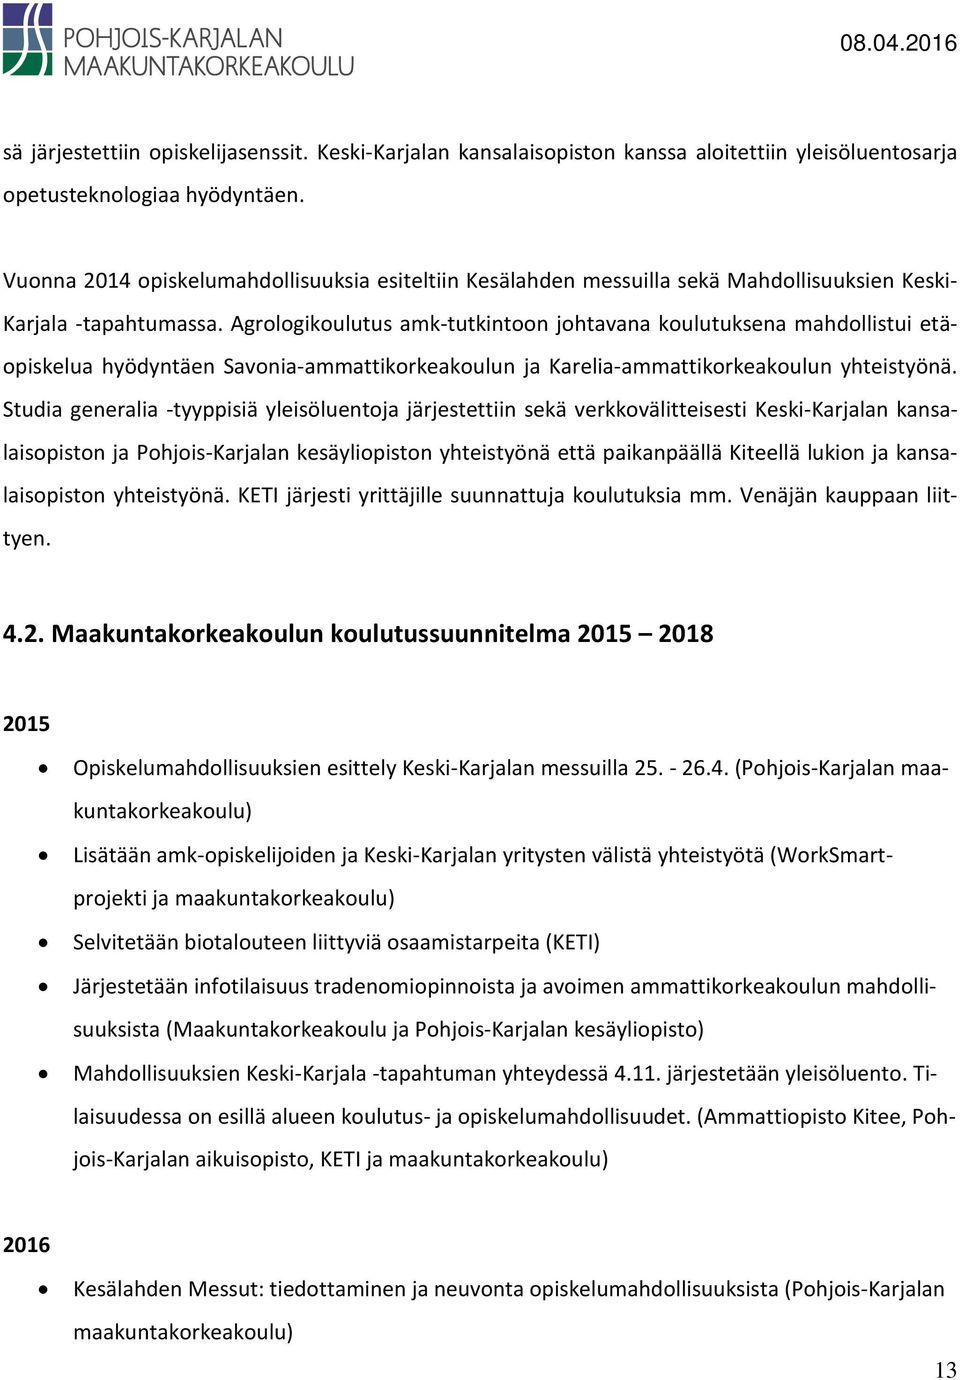 Agrologikoulutus amk-tutkintoon johtavana koulutuksena mahdollistui etäopiskelua hyödyntäen Savonia-ammattikorkeakoulun ja Karelia-ammattikorkeakoulun yhteistyönä.